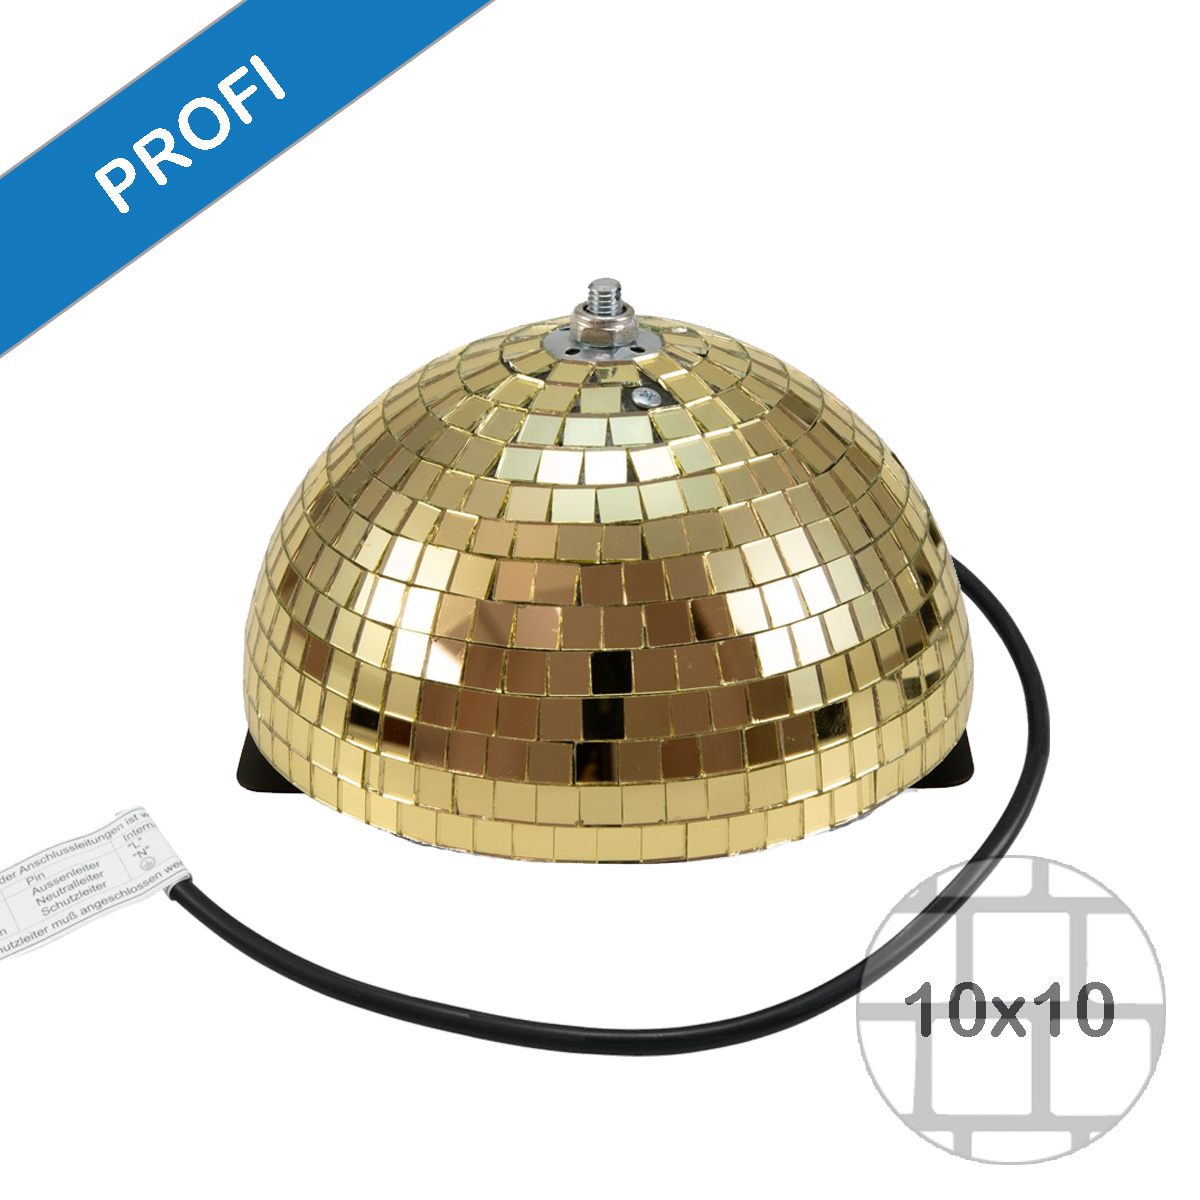 Spiegelkugel halb gold 20cm - für Deckenmontage - Diskokugel Echtglas - 10x10mm Spiegel - PROFI